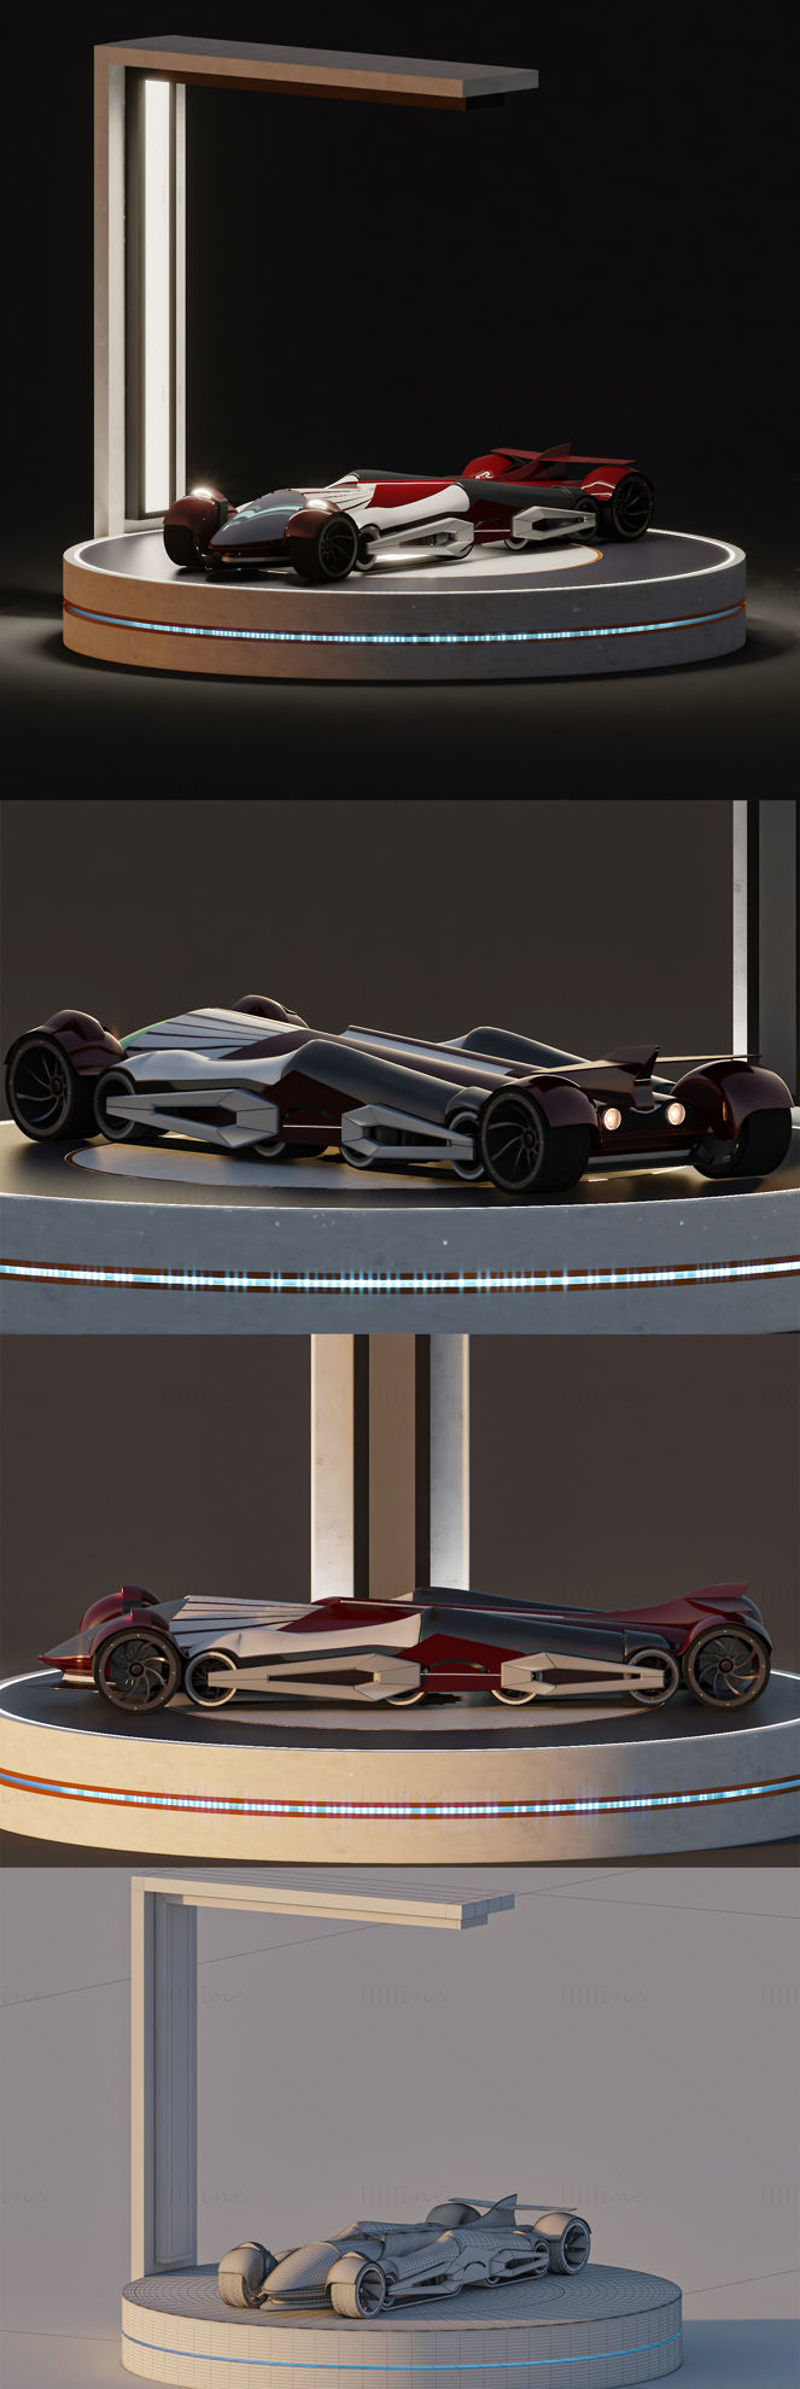 Konsept spor araba + kabin 3D model sahnesi